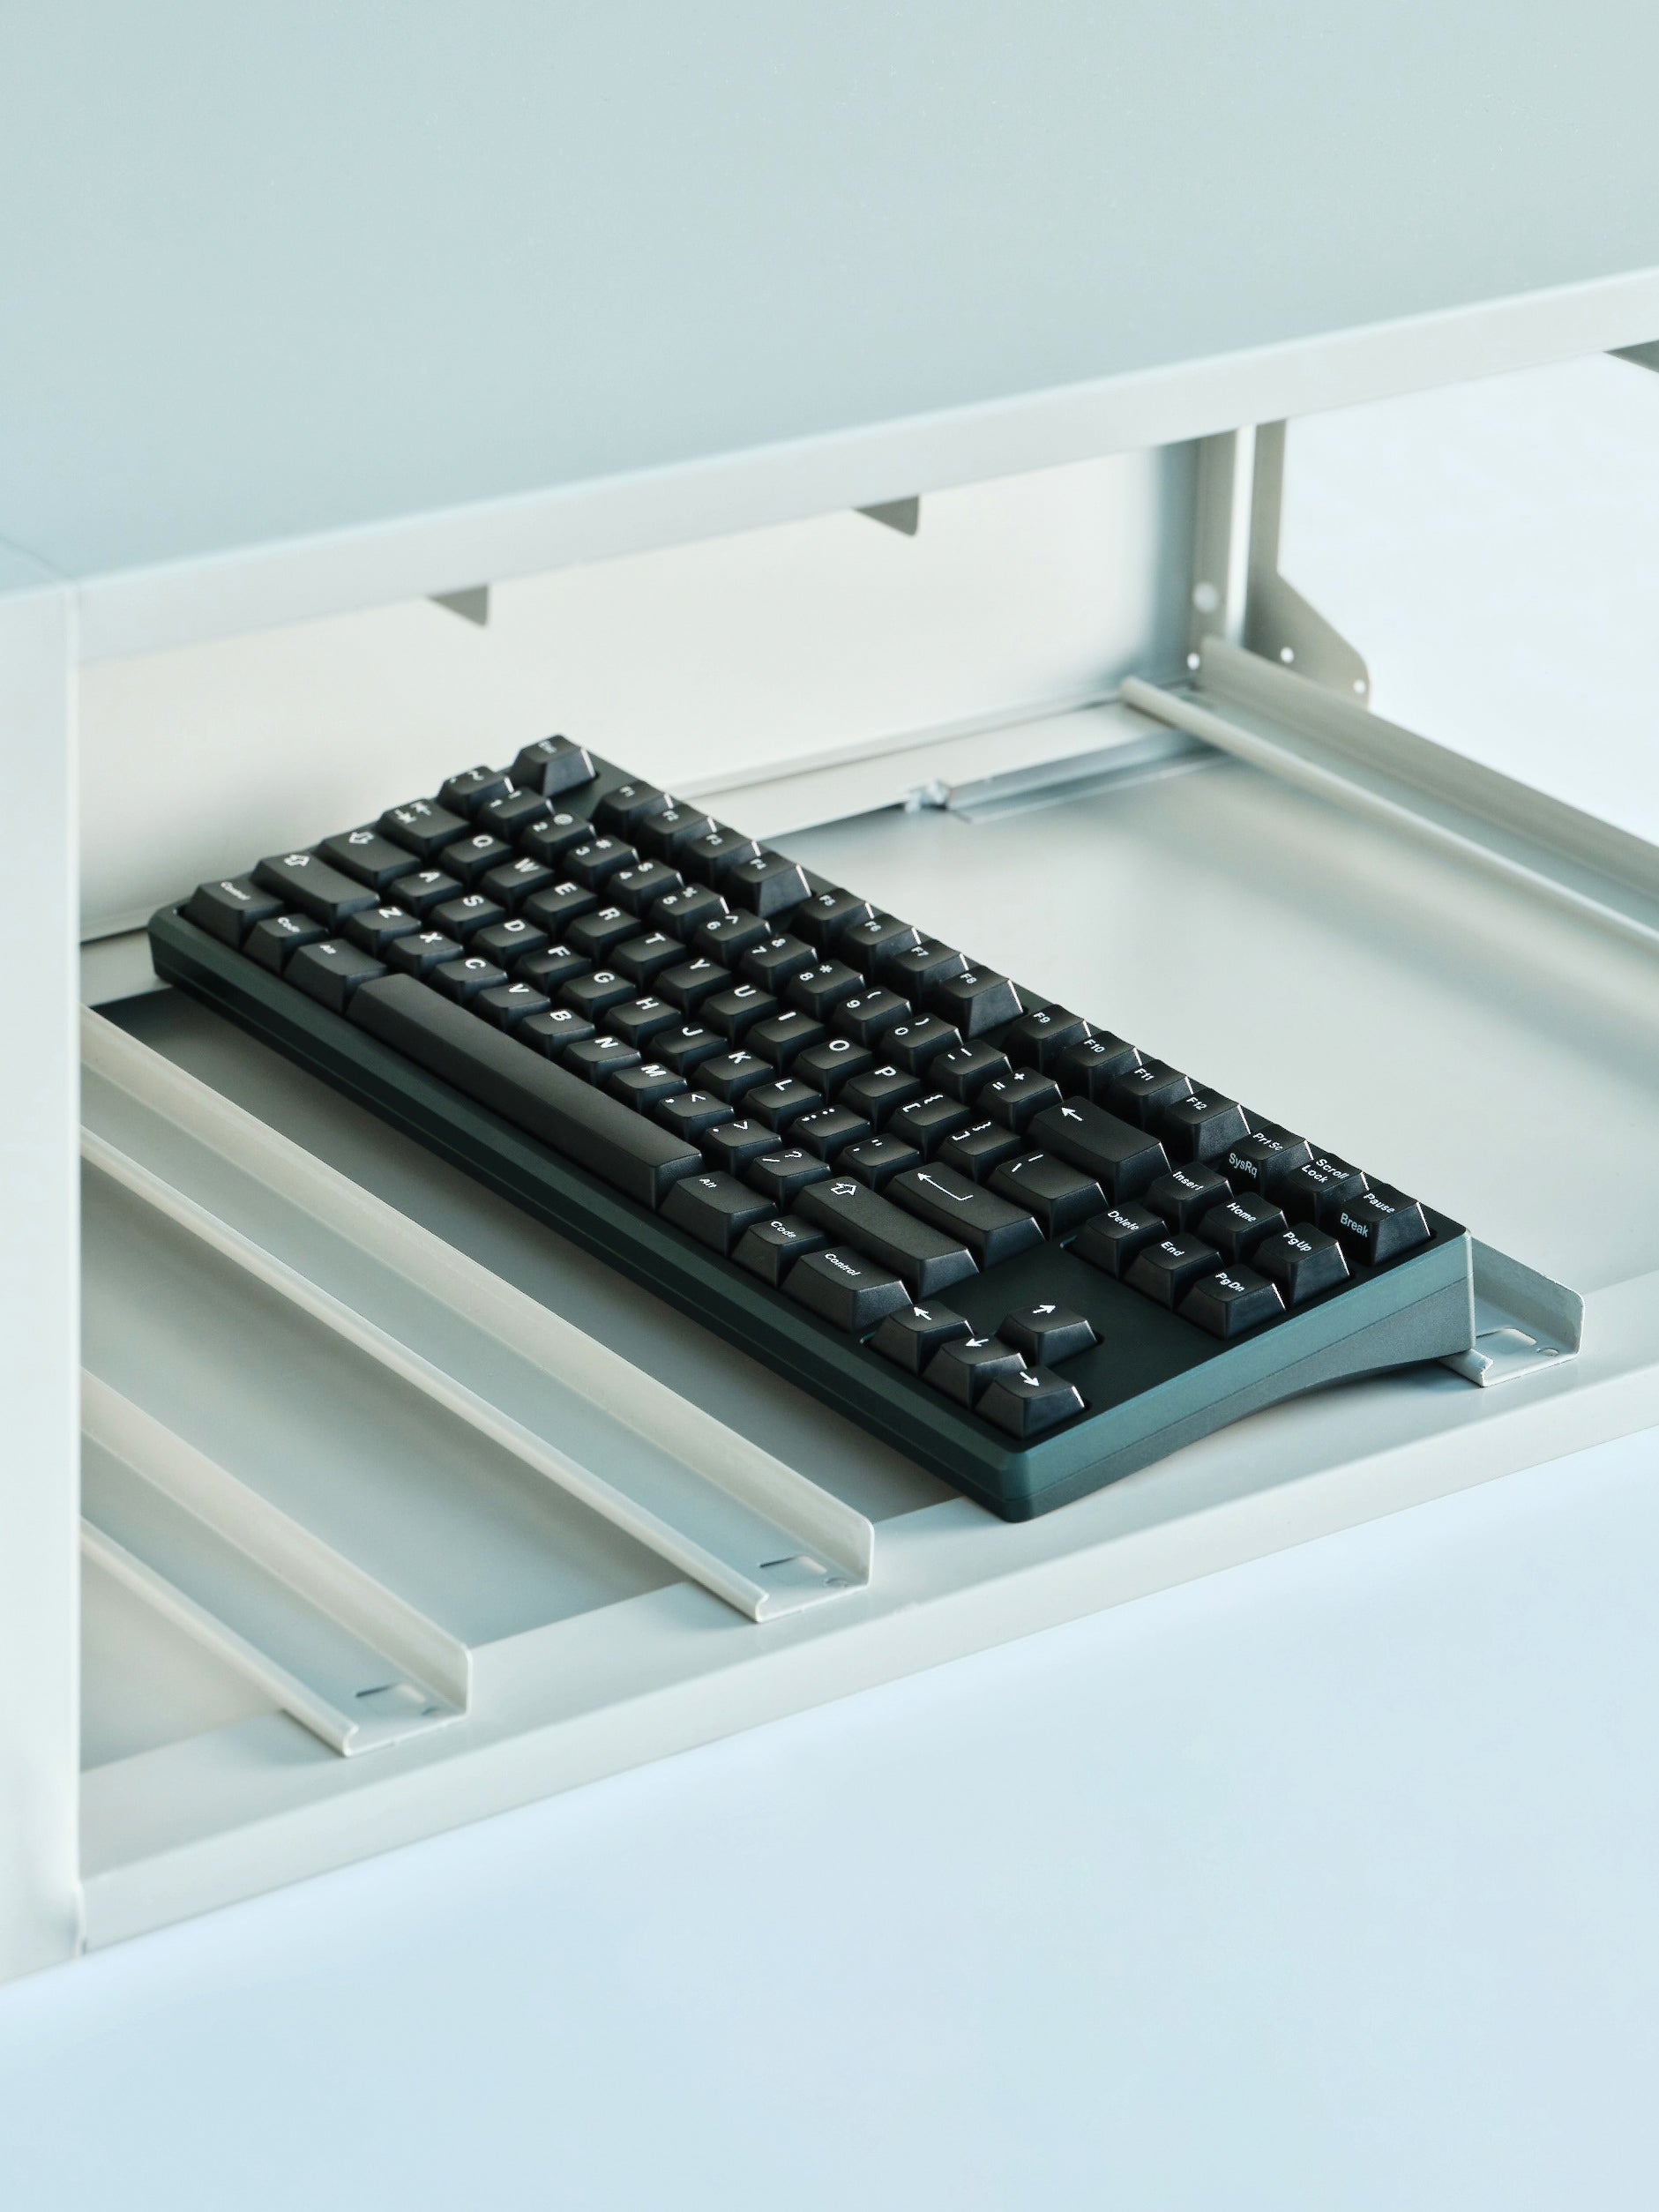 Keyboard Foams for TKL – GEONWORKS